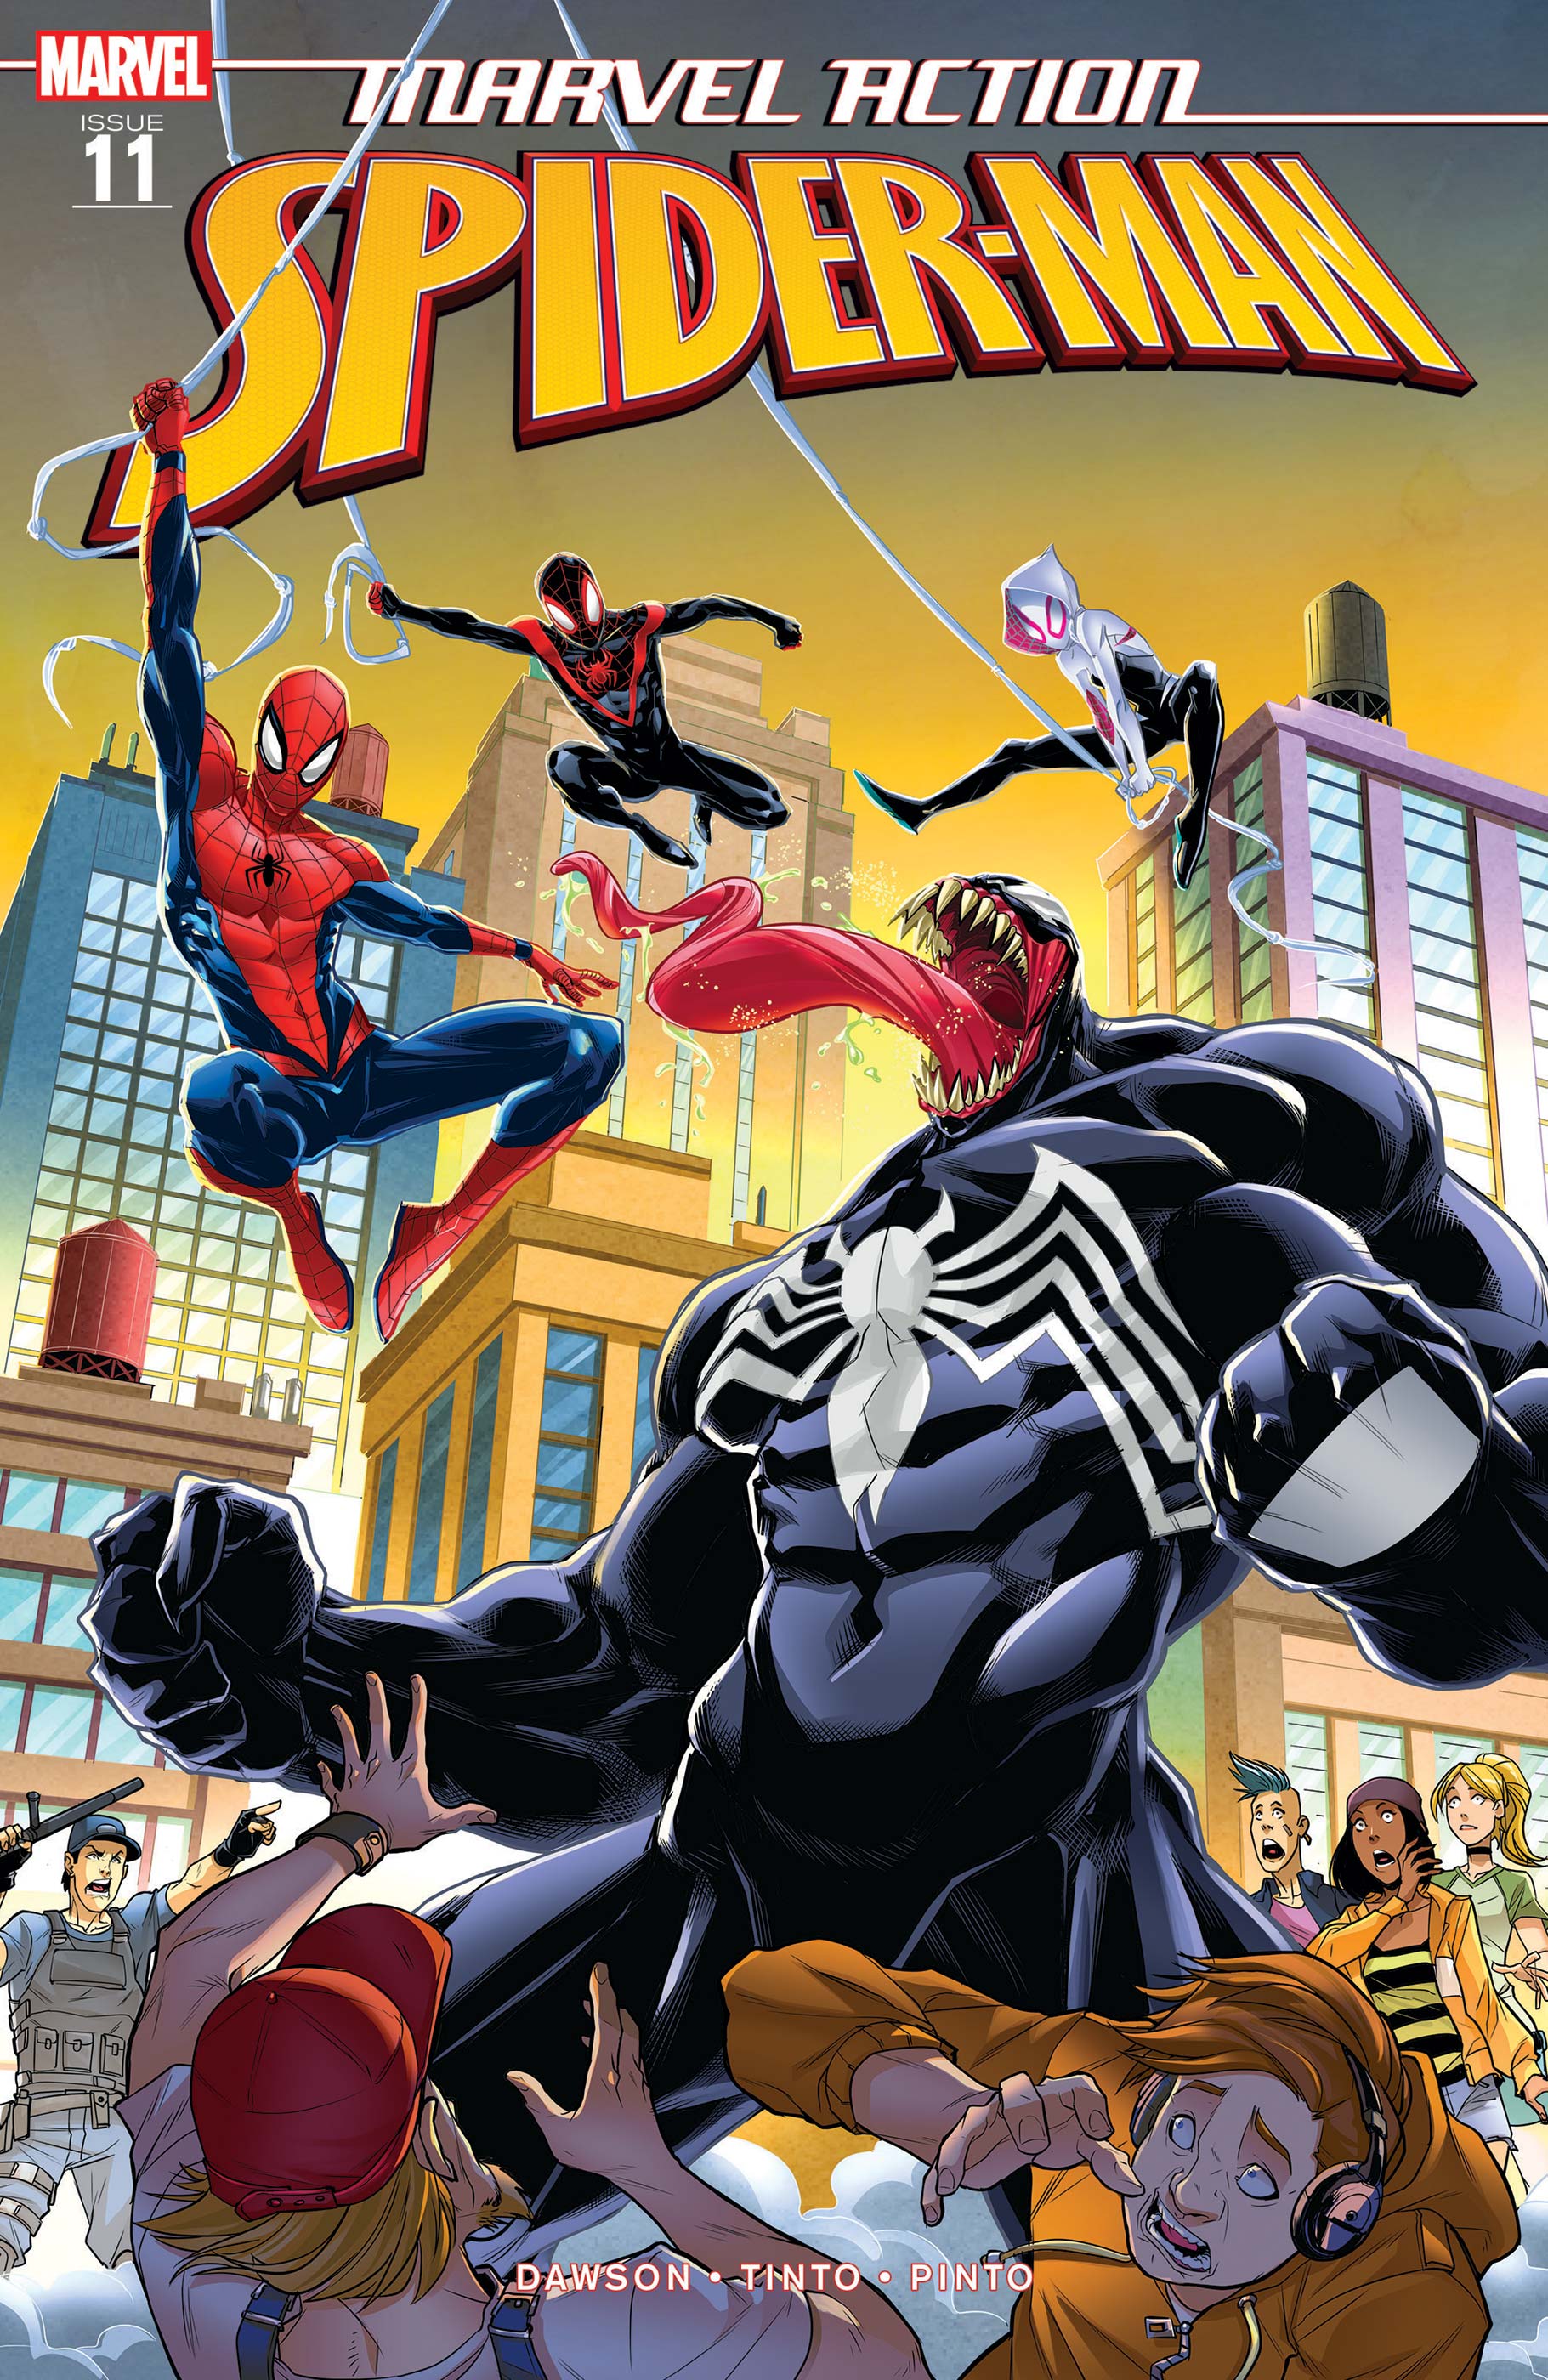 Marvel Action Spider-Man (2018) #11